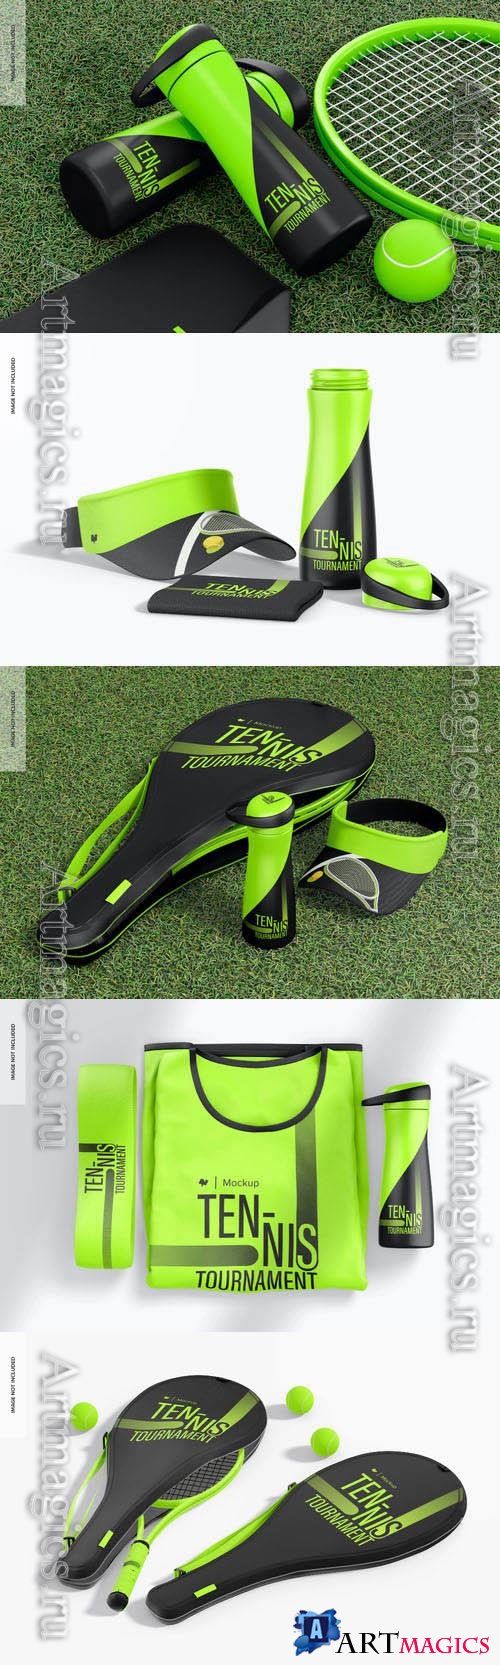 Tennis kit scene psd template mockup design